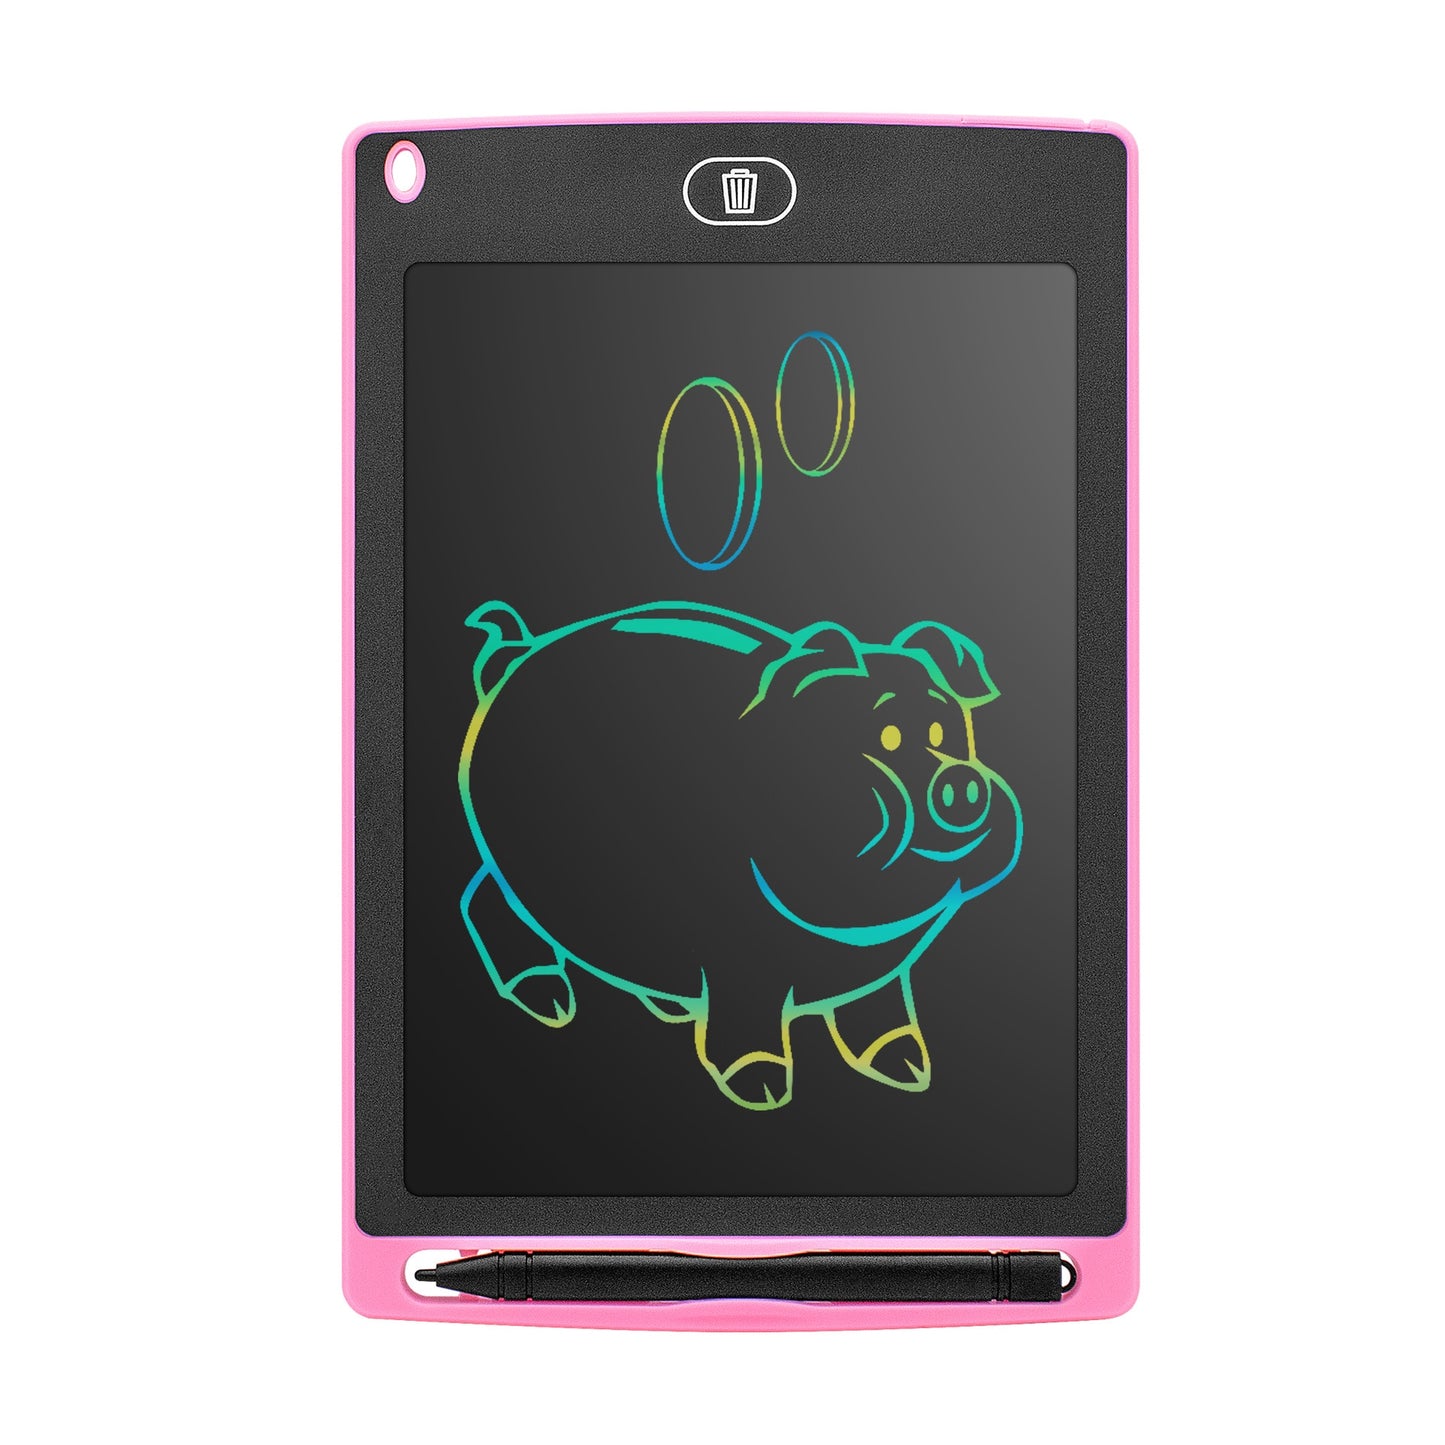 Farbige LCD Schreib- und Lerntafel, Elektronische Zeichnungen, pink / Minikauf.ch